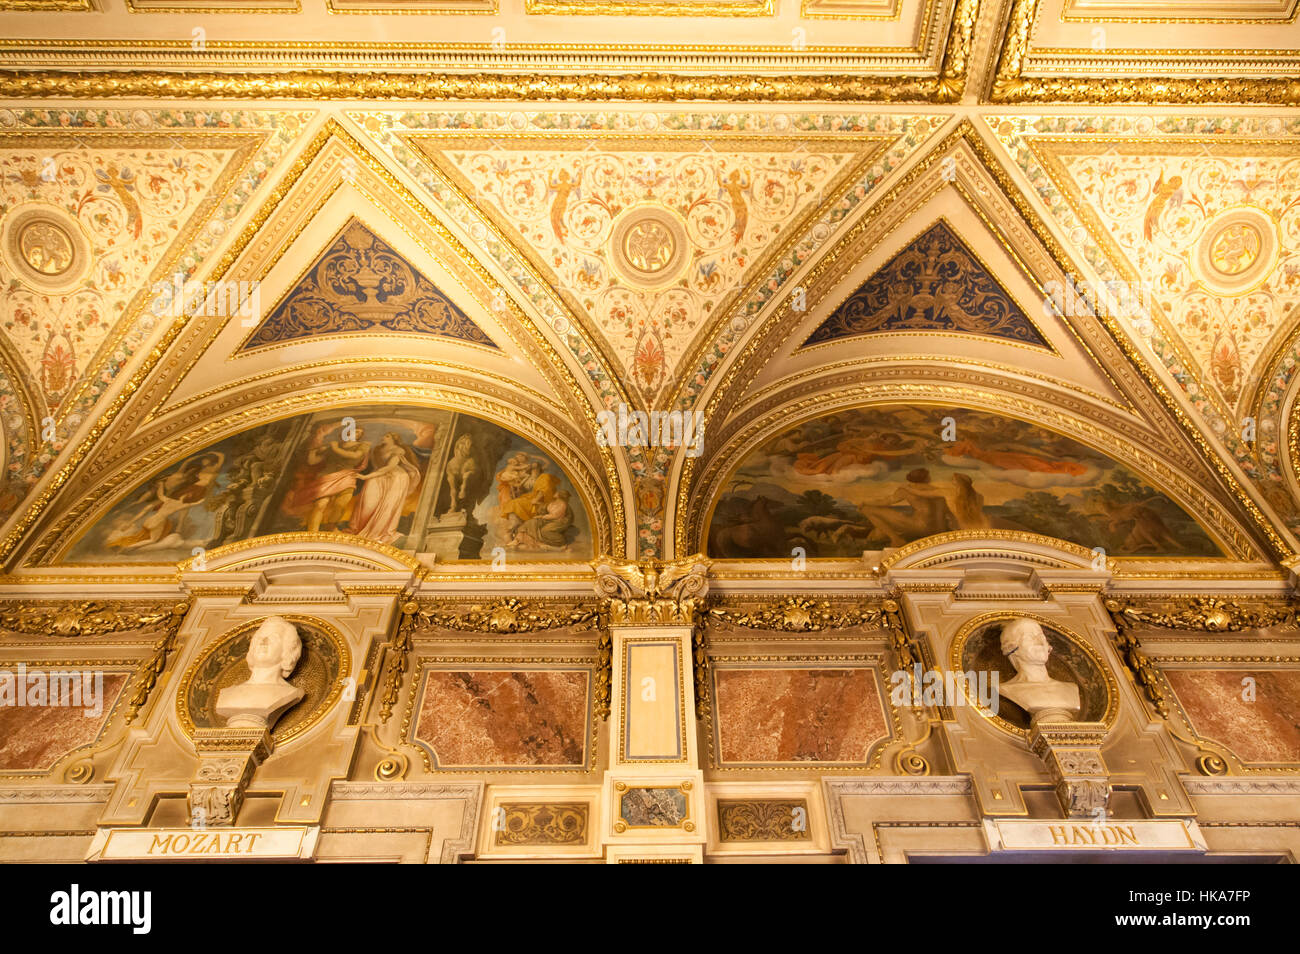 El rico interior barroco con esculturas de compositores famosos en el histórico edificio de la ciudad de Viena. Foto de stock